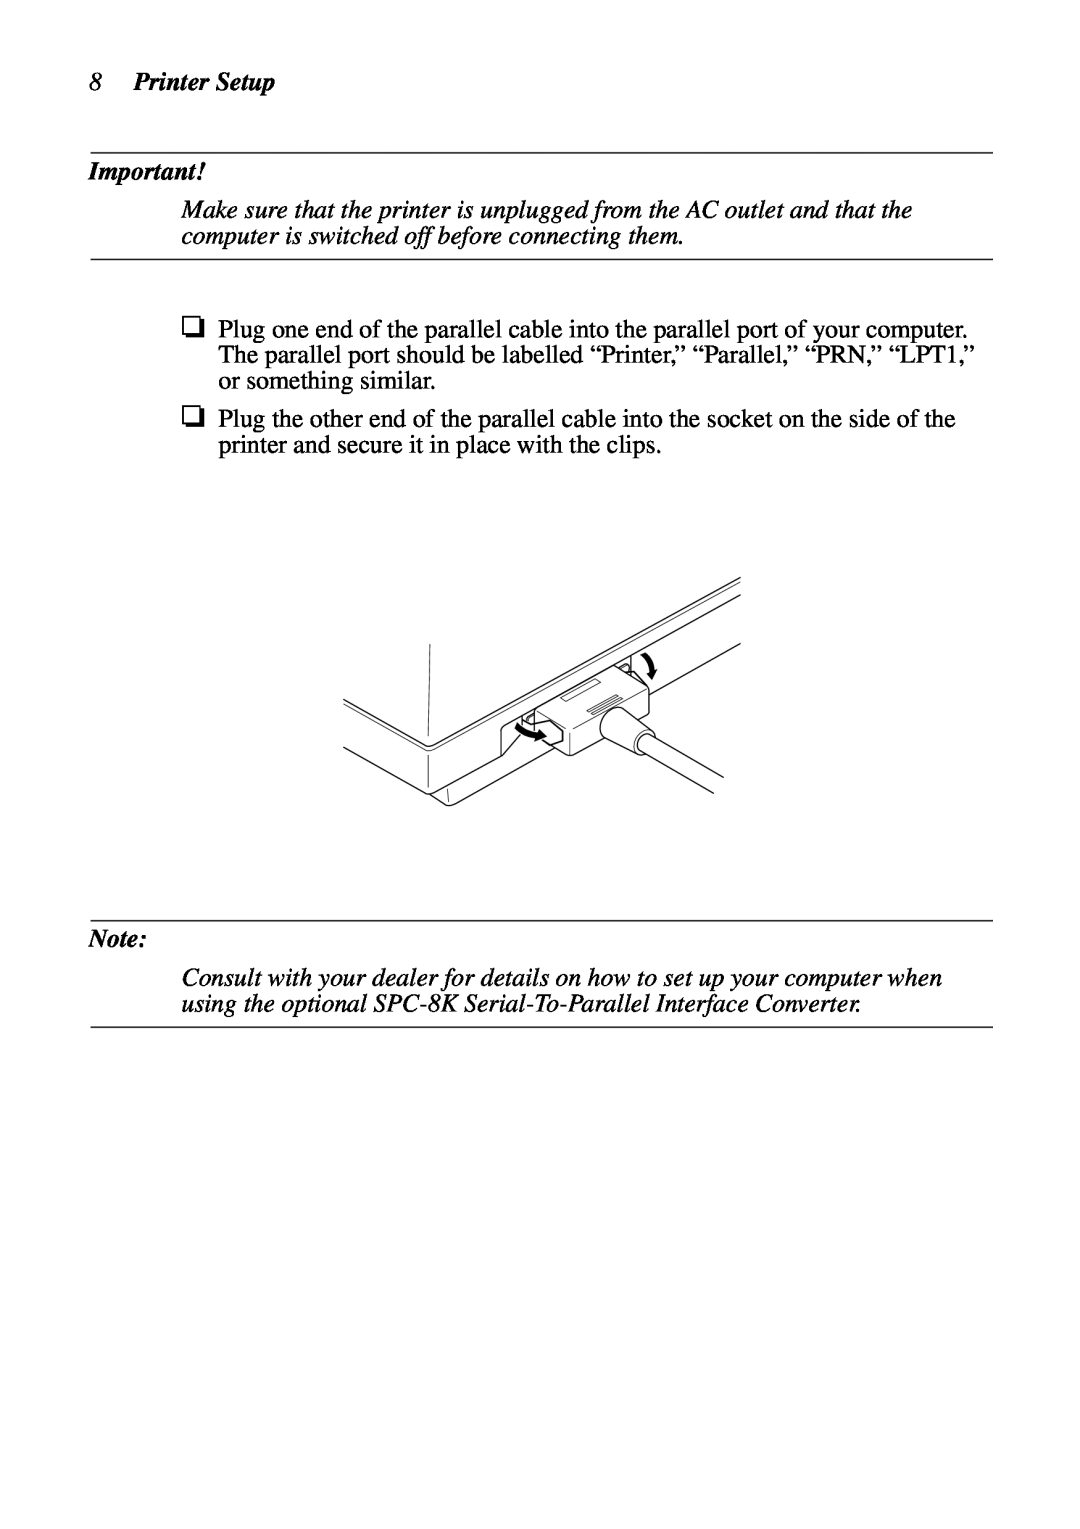 Star Micronics LC-90 NX-1010 user manual Printer Setup 